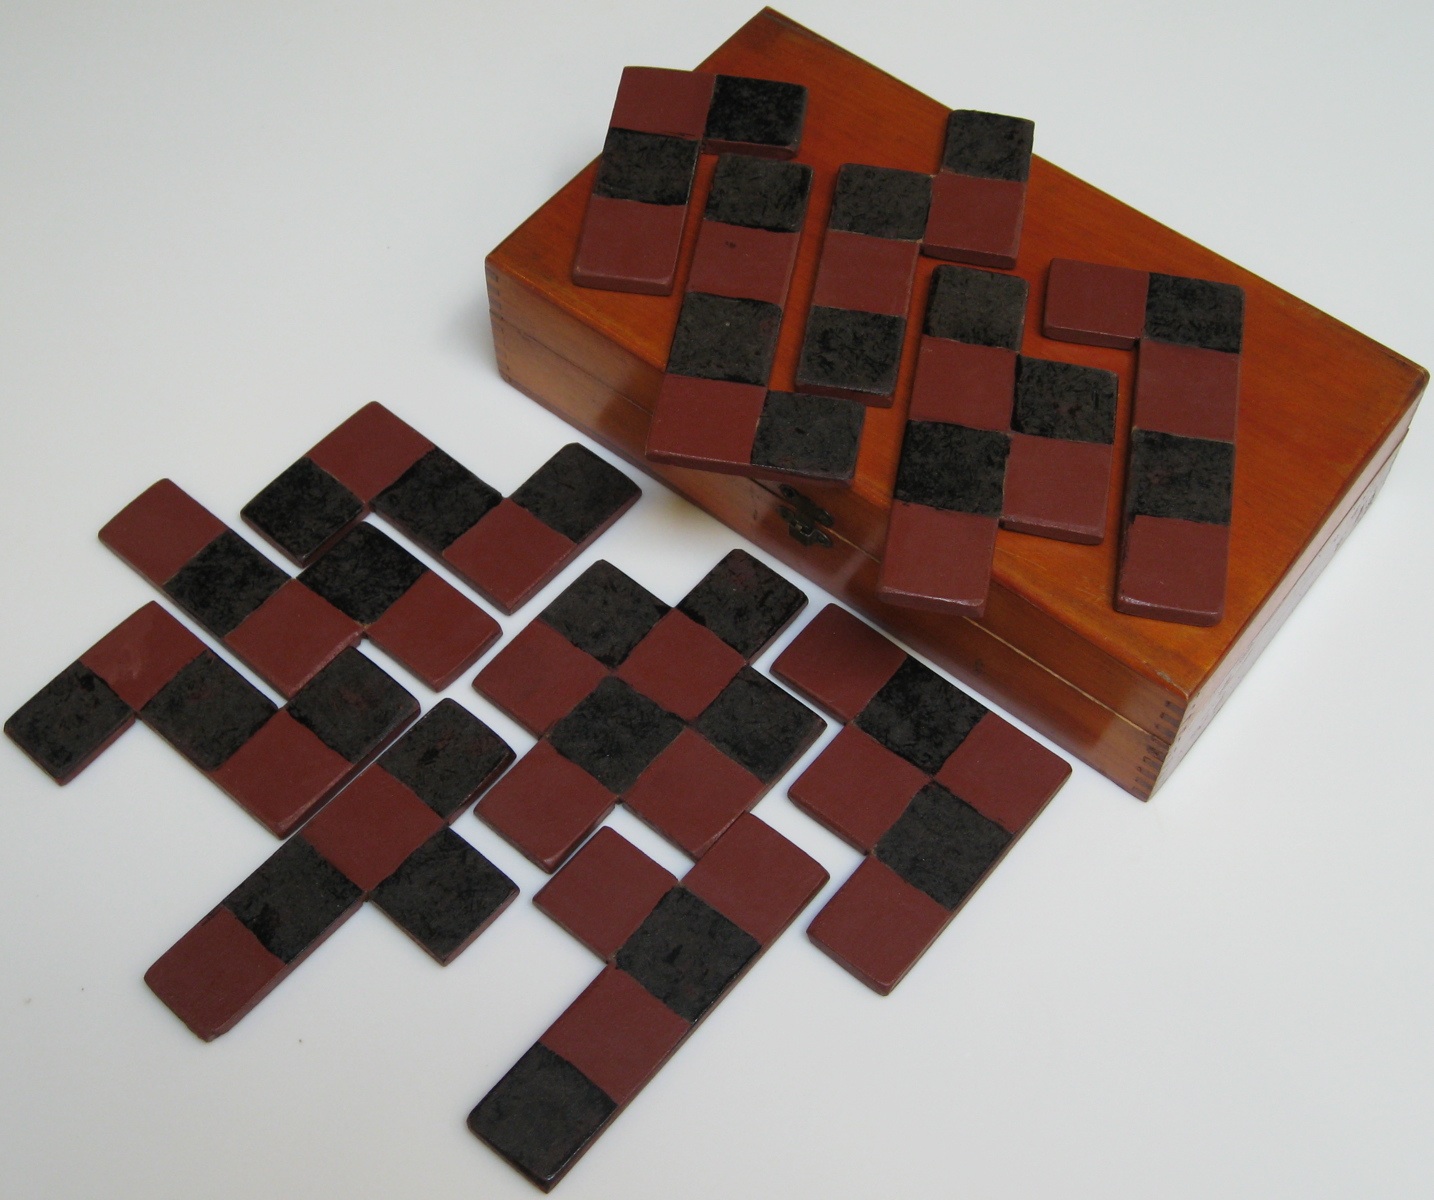 "Checkerboard (a.k.a. All Square Novelty Puzzle, Check-A-Board